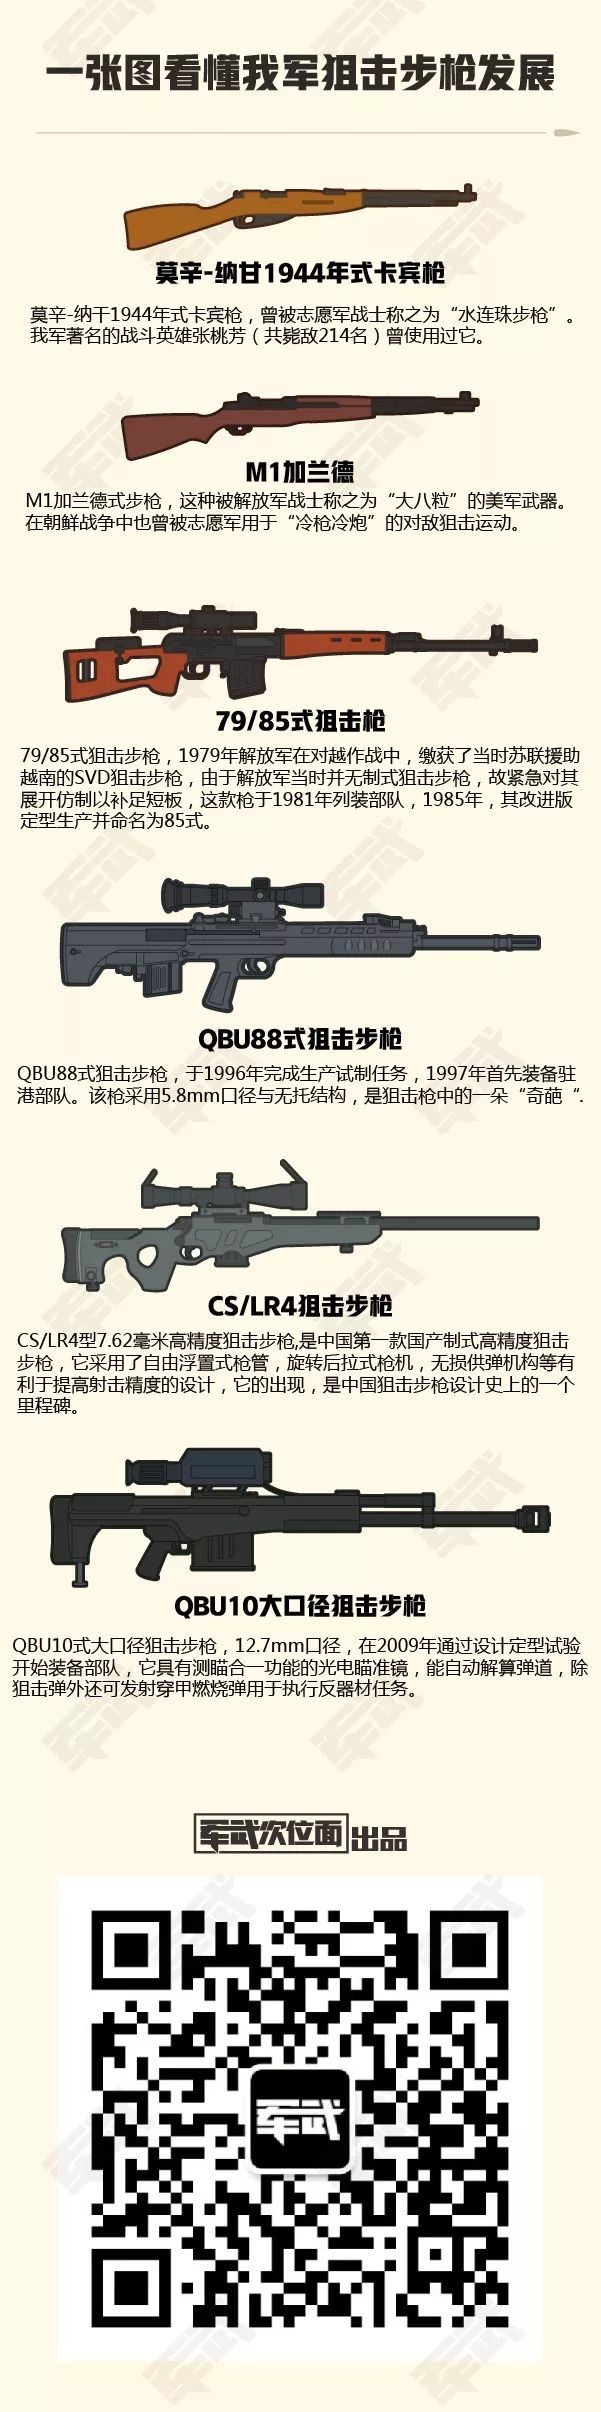 解放军一共用过多少种狙击枪 哪一款狙击枪最经典 军武次位面微信公众号文章